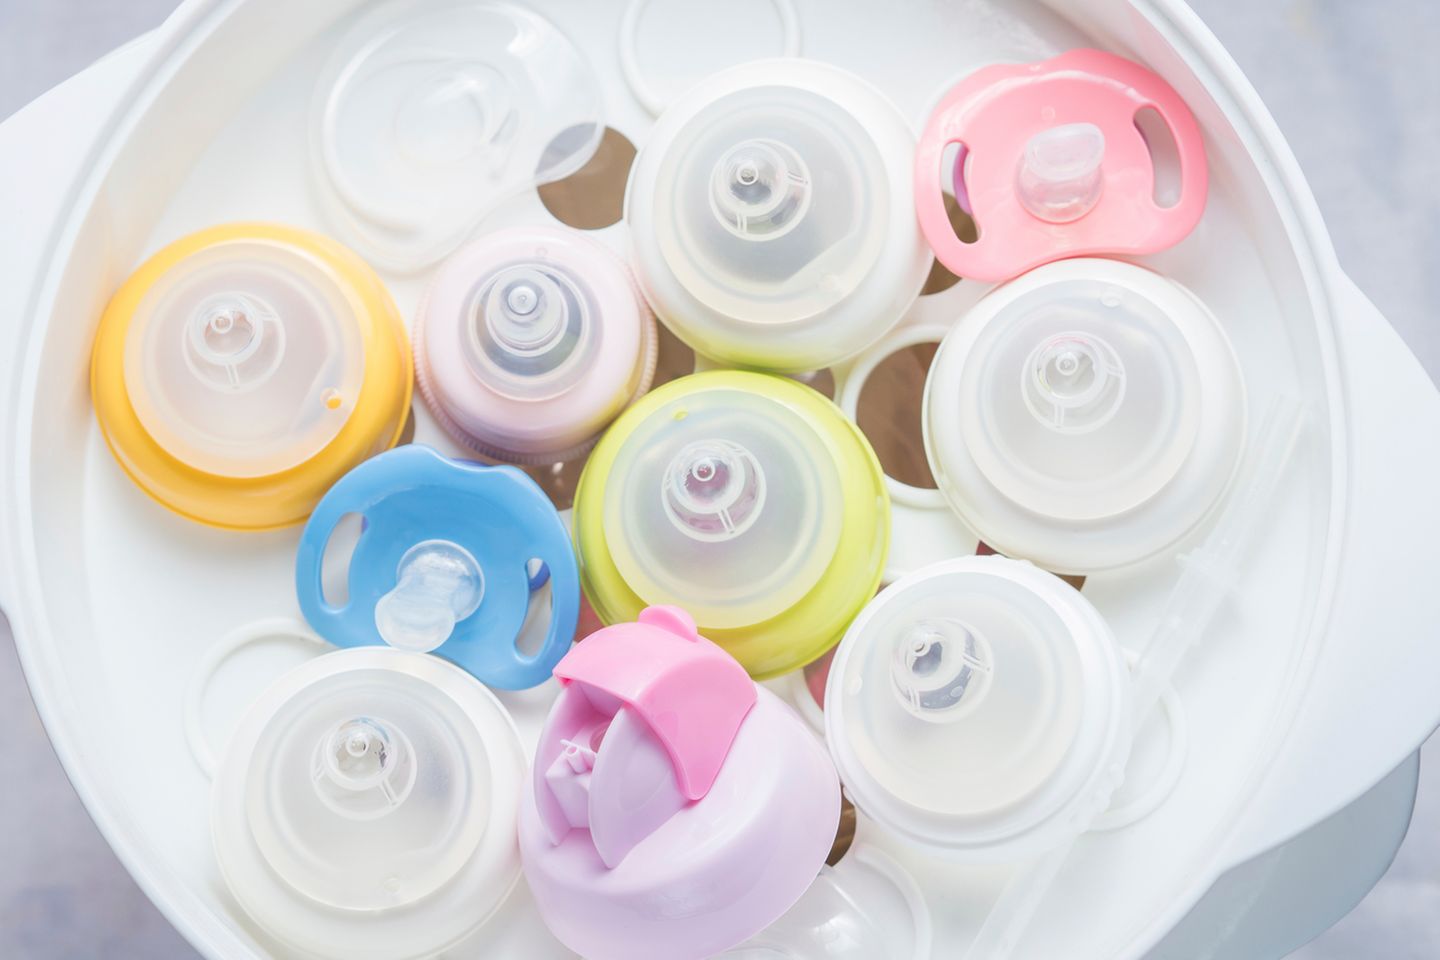 Ein Sterilisator reinigt die Babyflasche nach der Spülmaschine oder der Handwäsche noch mal gründlich mit heißem Wasserdampf. Für Neugeborene bestimmt zu empfehlen. Wenn Dein Kind bereits über den Boden robbt und den ein oder anderen Fussel vom Boden in den Mund steckt, kannst Du Dir das wohl auch sparen.  Aber schaden tut das natürlich nicht :-)